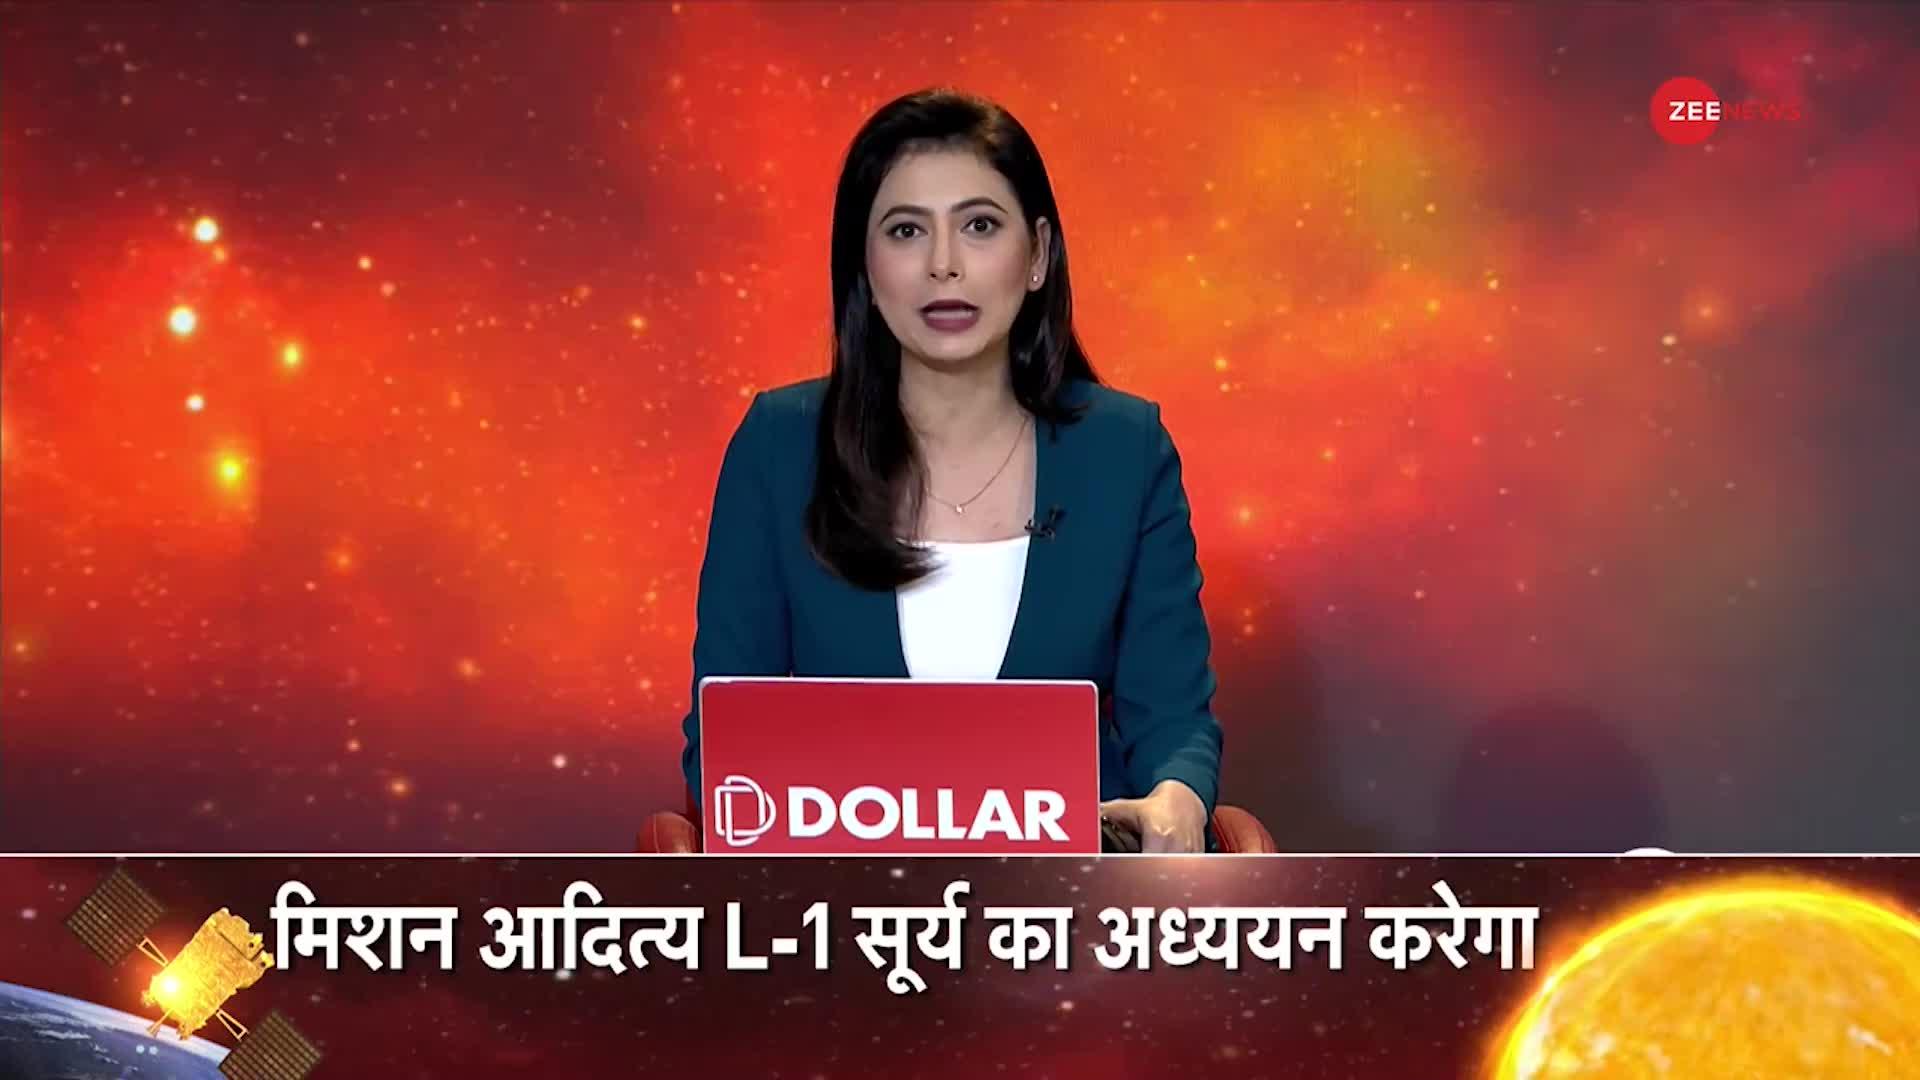 Aditya L1 Mission: अंतरिक्ष में फिर भारत की छलांग! पृथ्वी से करीब 15 लाख Kilometre की दूरी करेगा तय